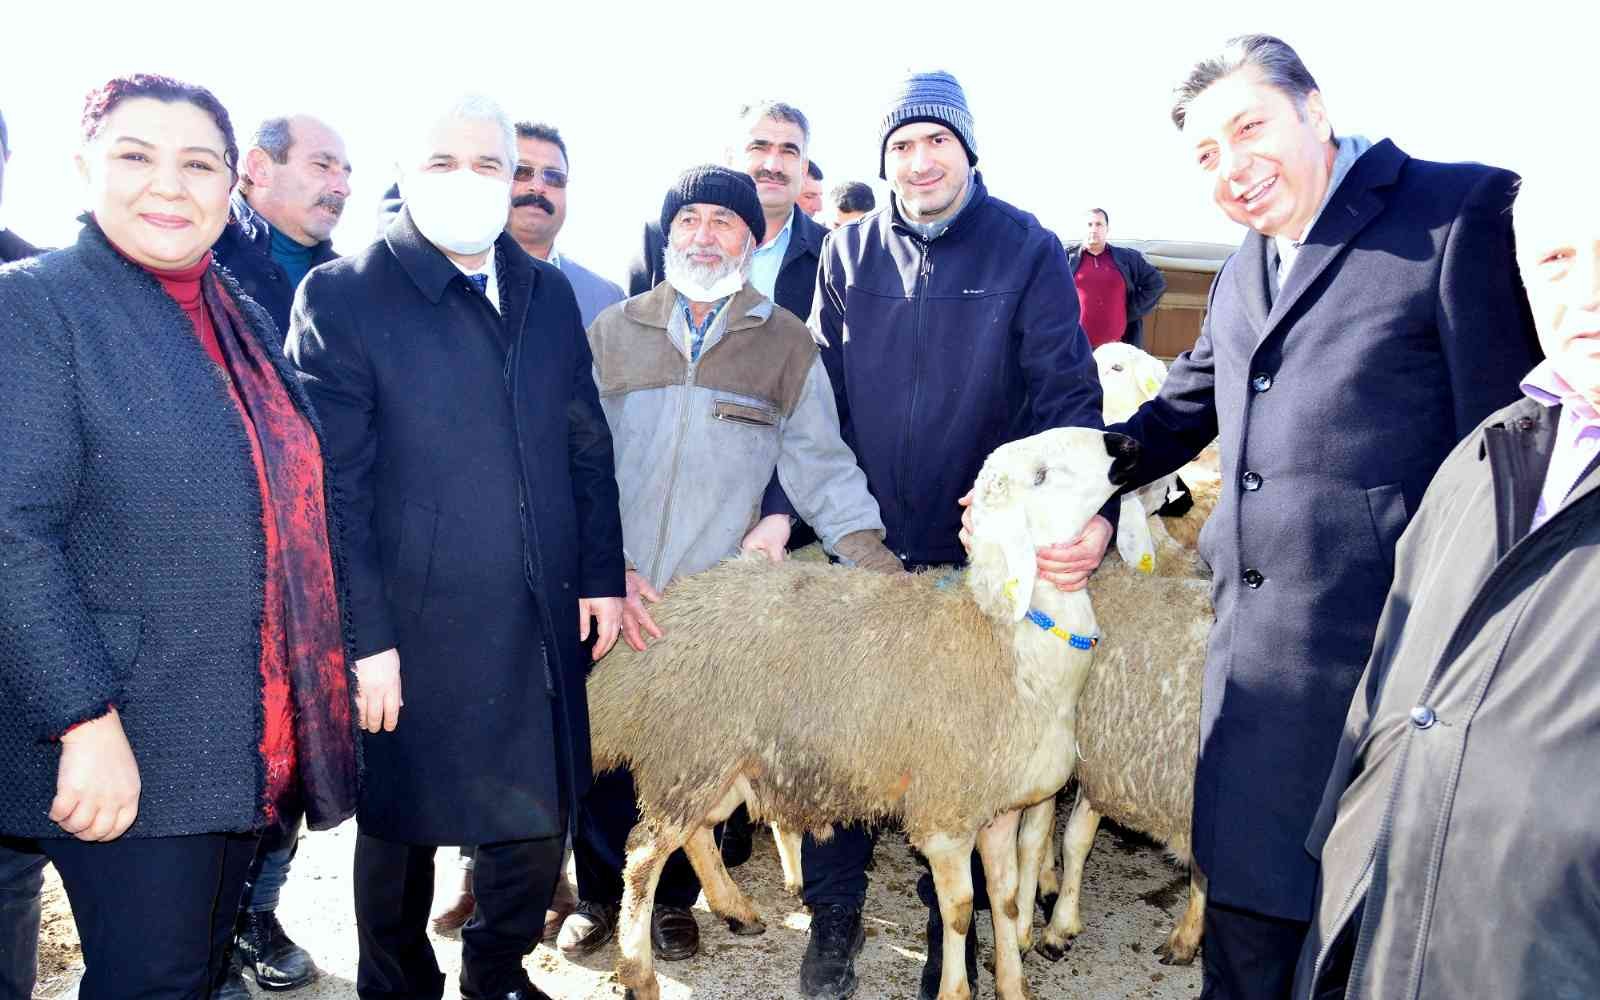 Kırşehir’de çiftçilere hayvan desteği #kirsehir